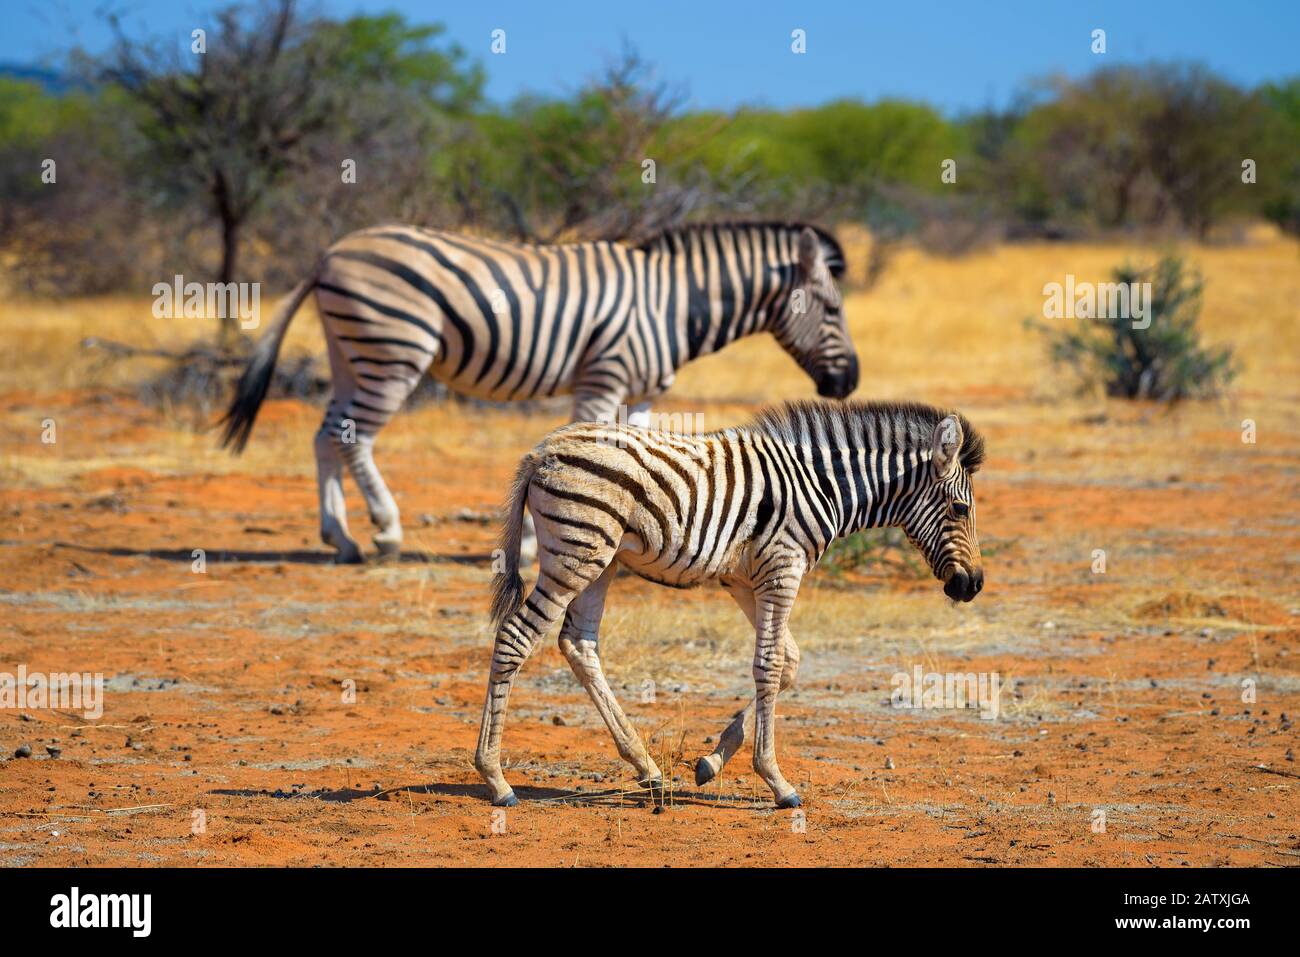 Two zebras in Etosha National Park, Namibia Stock Photo